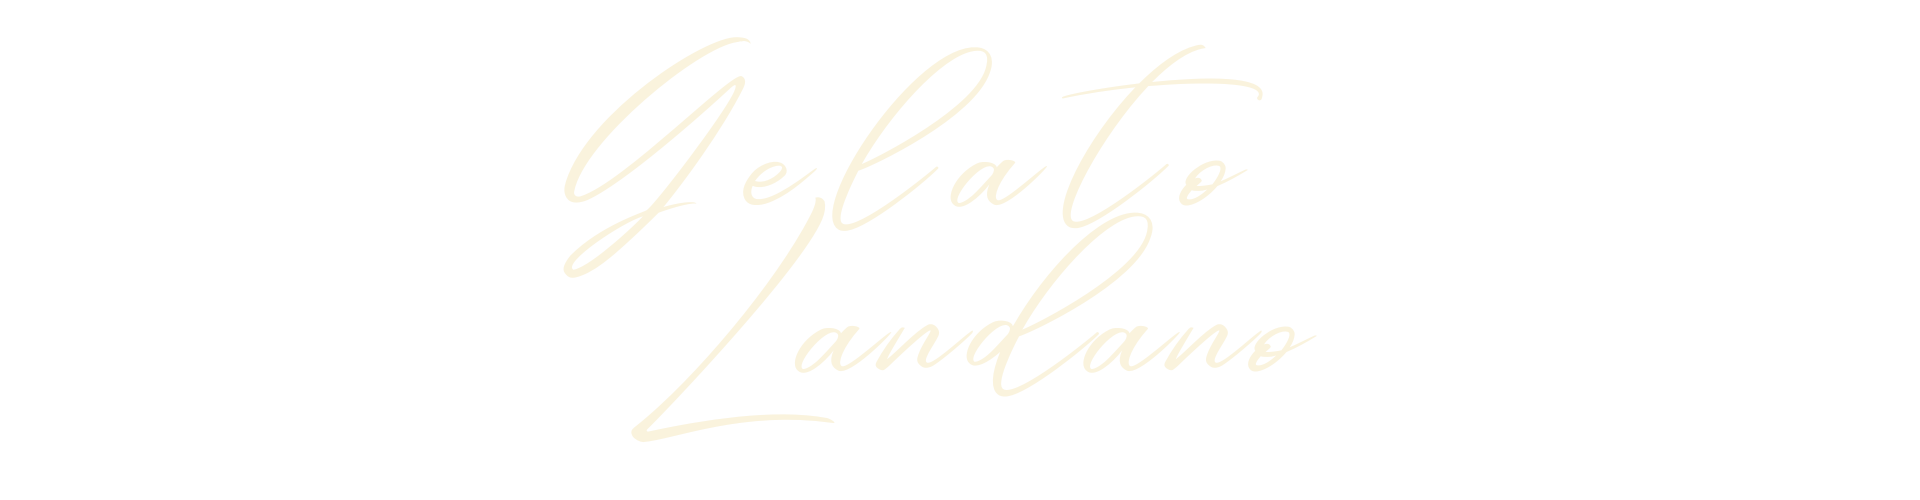 Gelato Landano